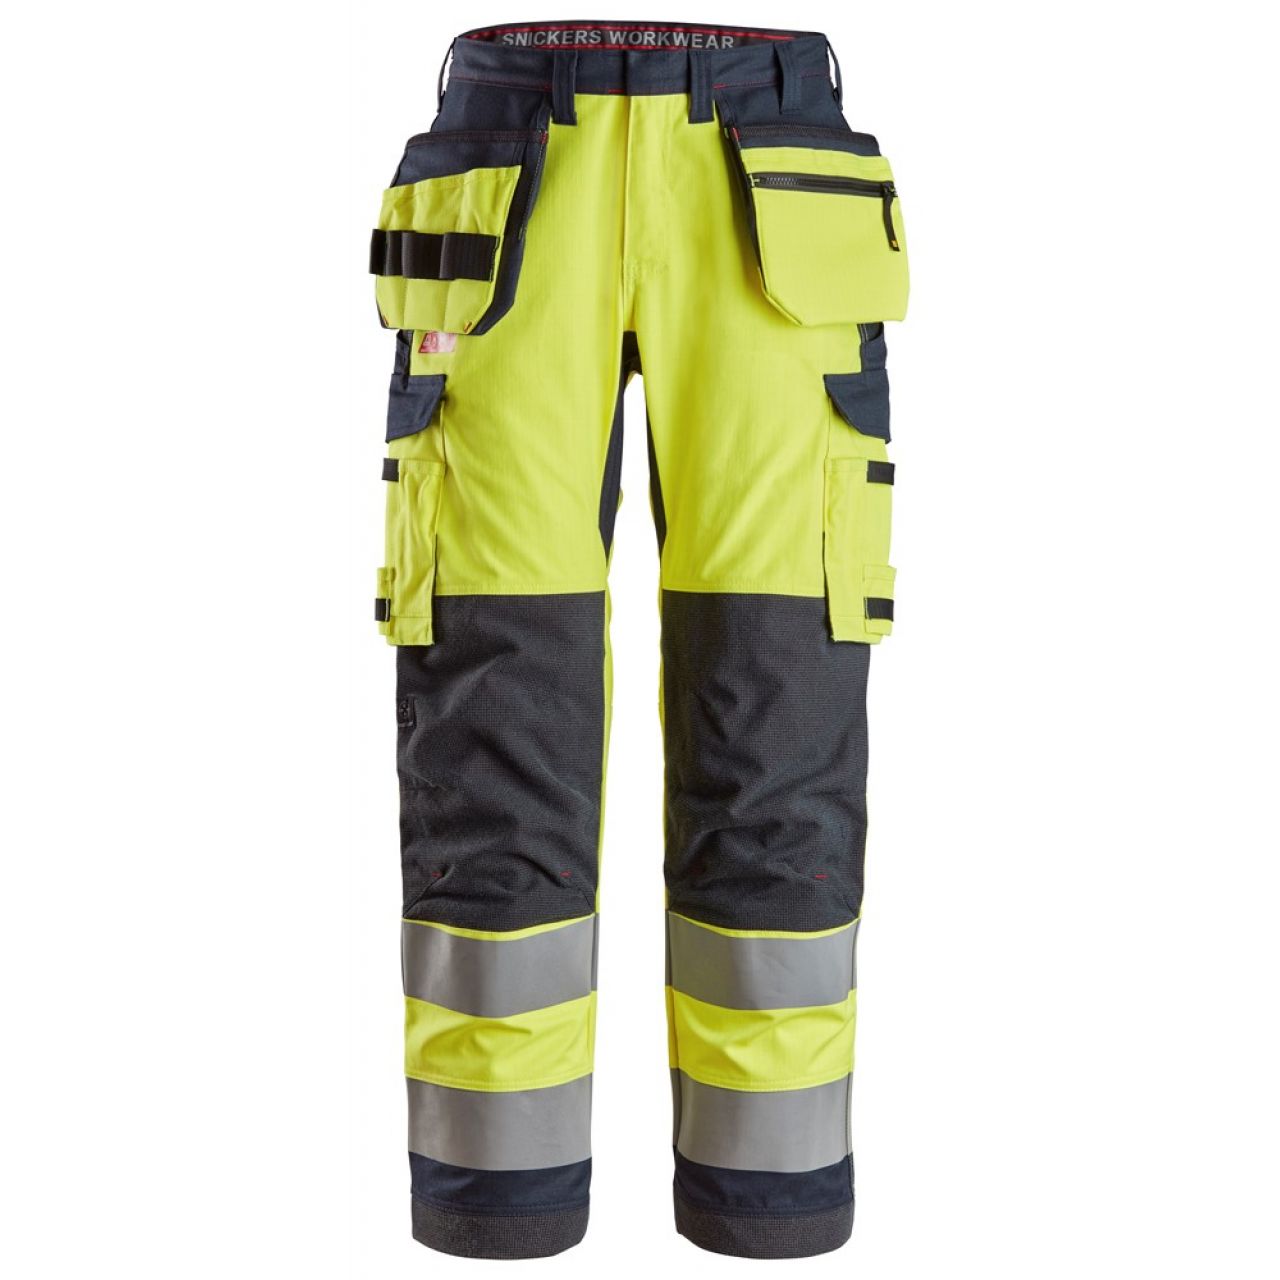 6261 Pantalones largos de trabajo de alta visibilidad clase 2 con bolsillos flotantes simétricos ProtecWork amarillo-azul marino talla 62